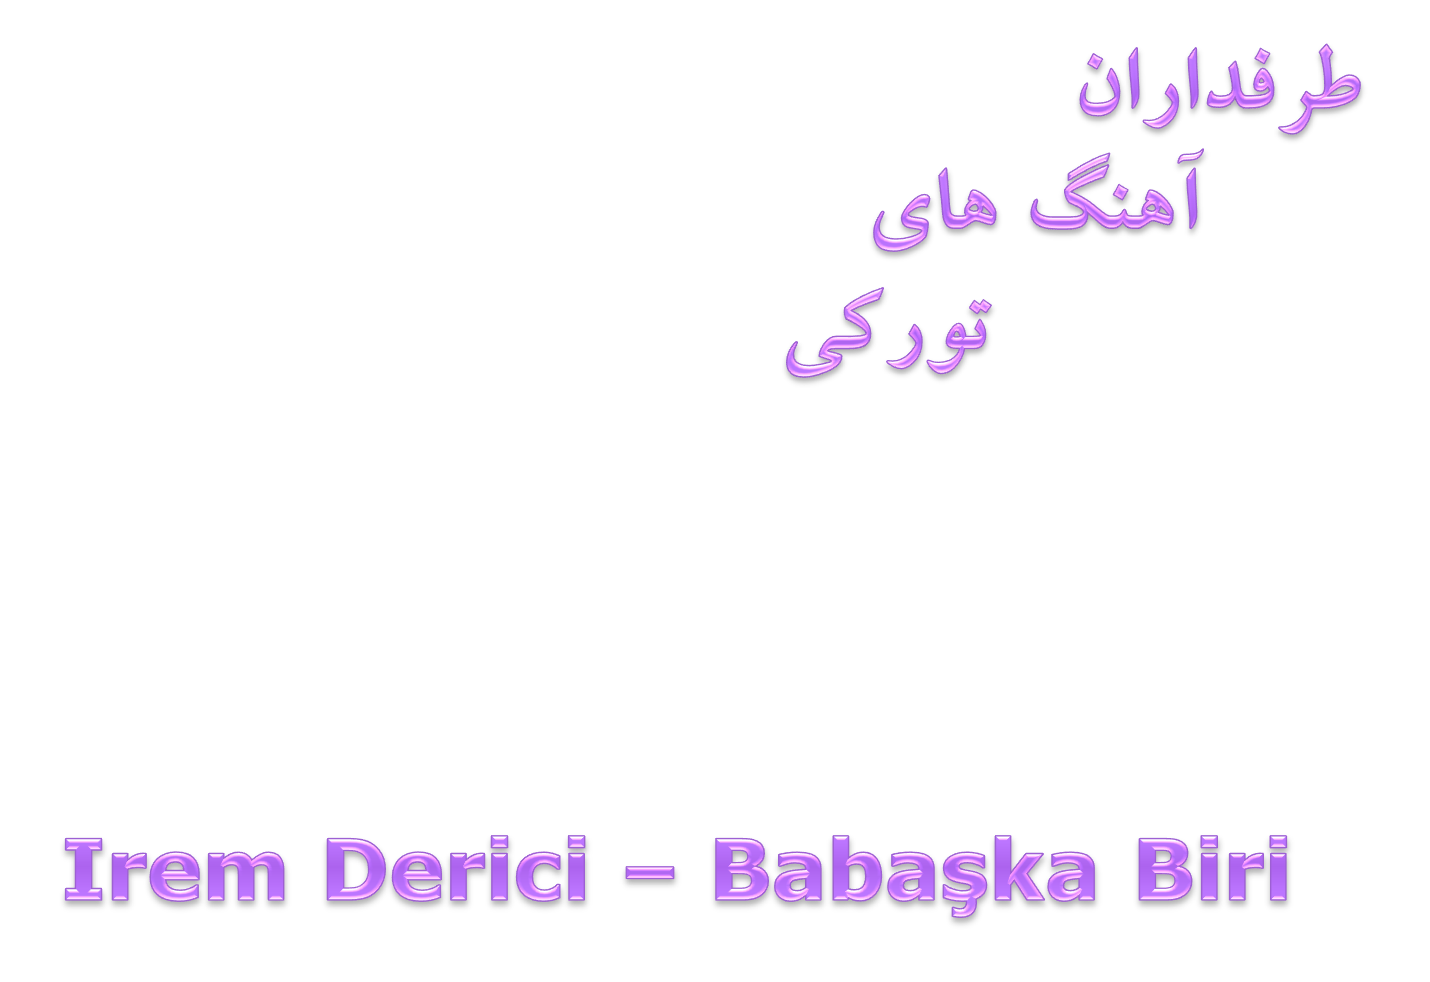 دانلود آهنگ جدید Irem Derici – Bambaska Biri